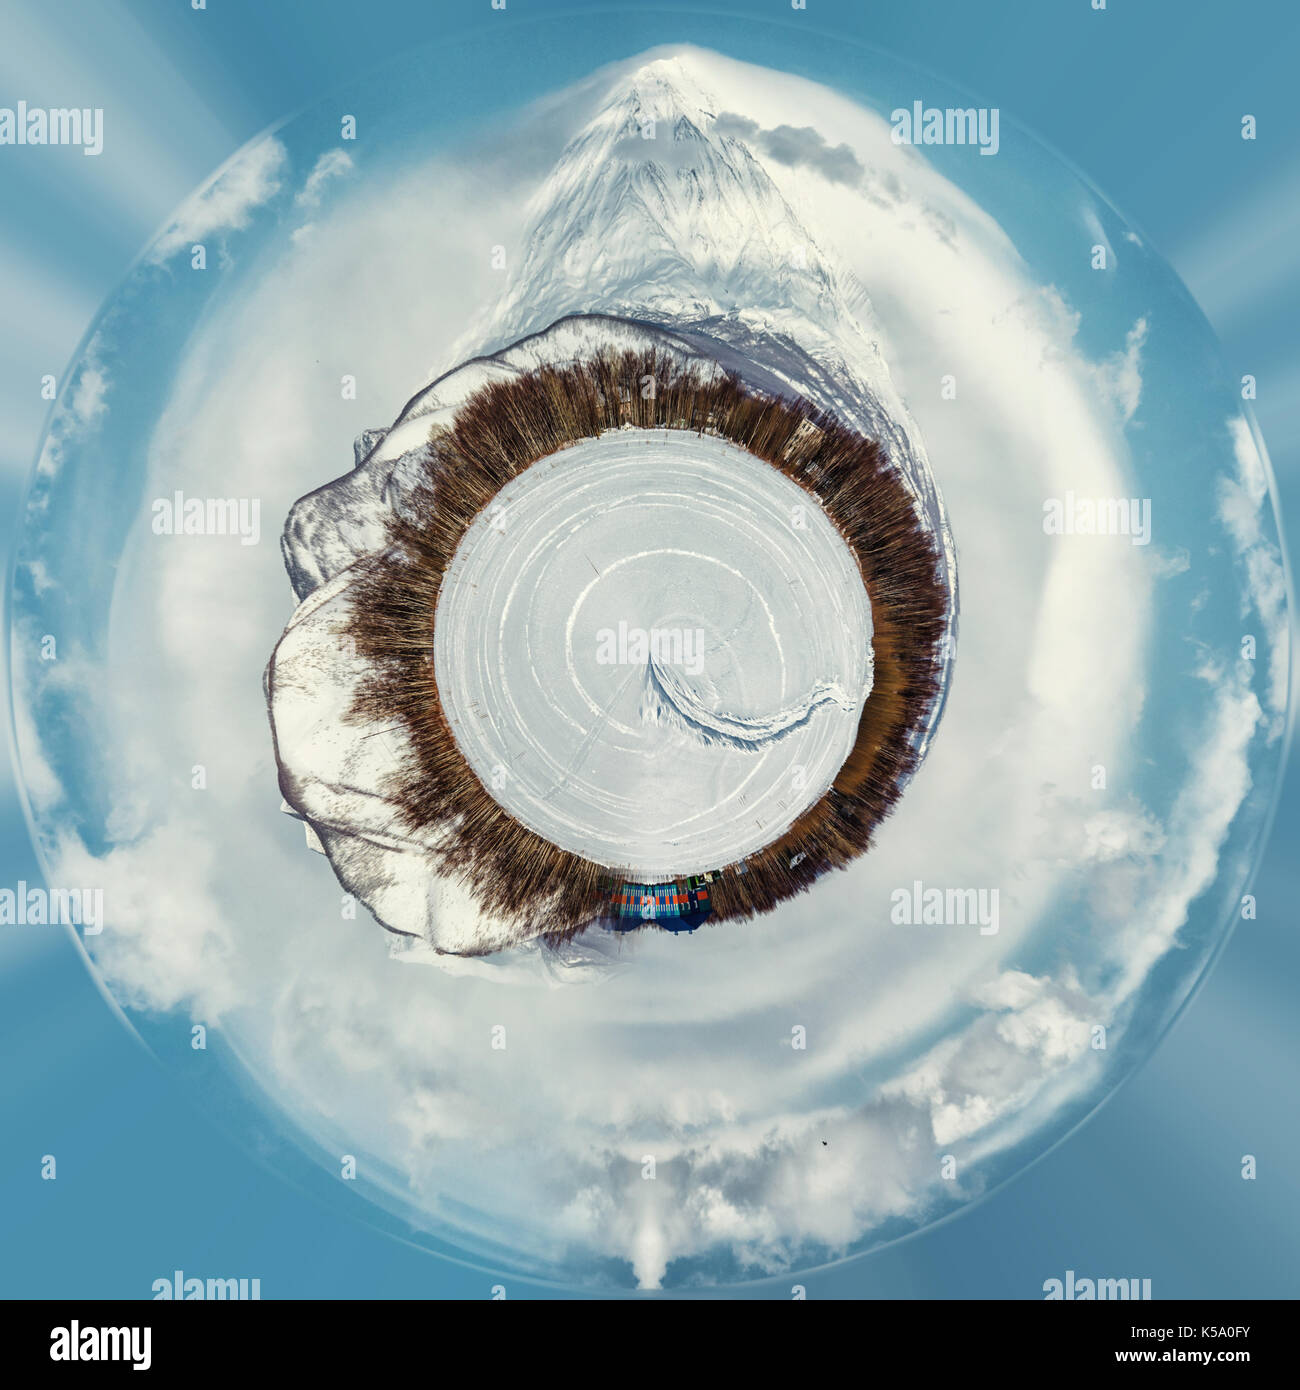 Petite planète sphère 360° panorama du volcan koryaksky. et les paysages enneigés. kamchatka. Extrême-Orient de la Russie. Banque D'Images